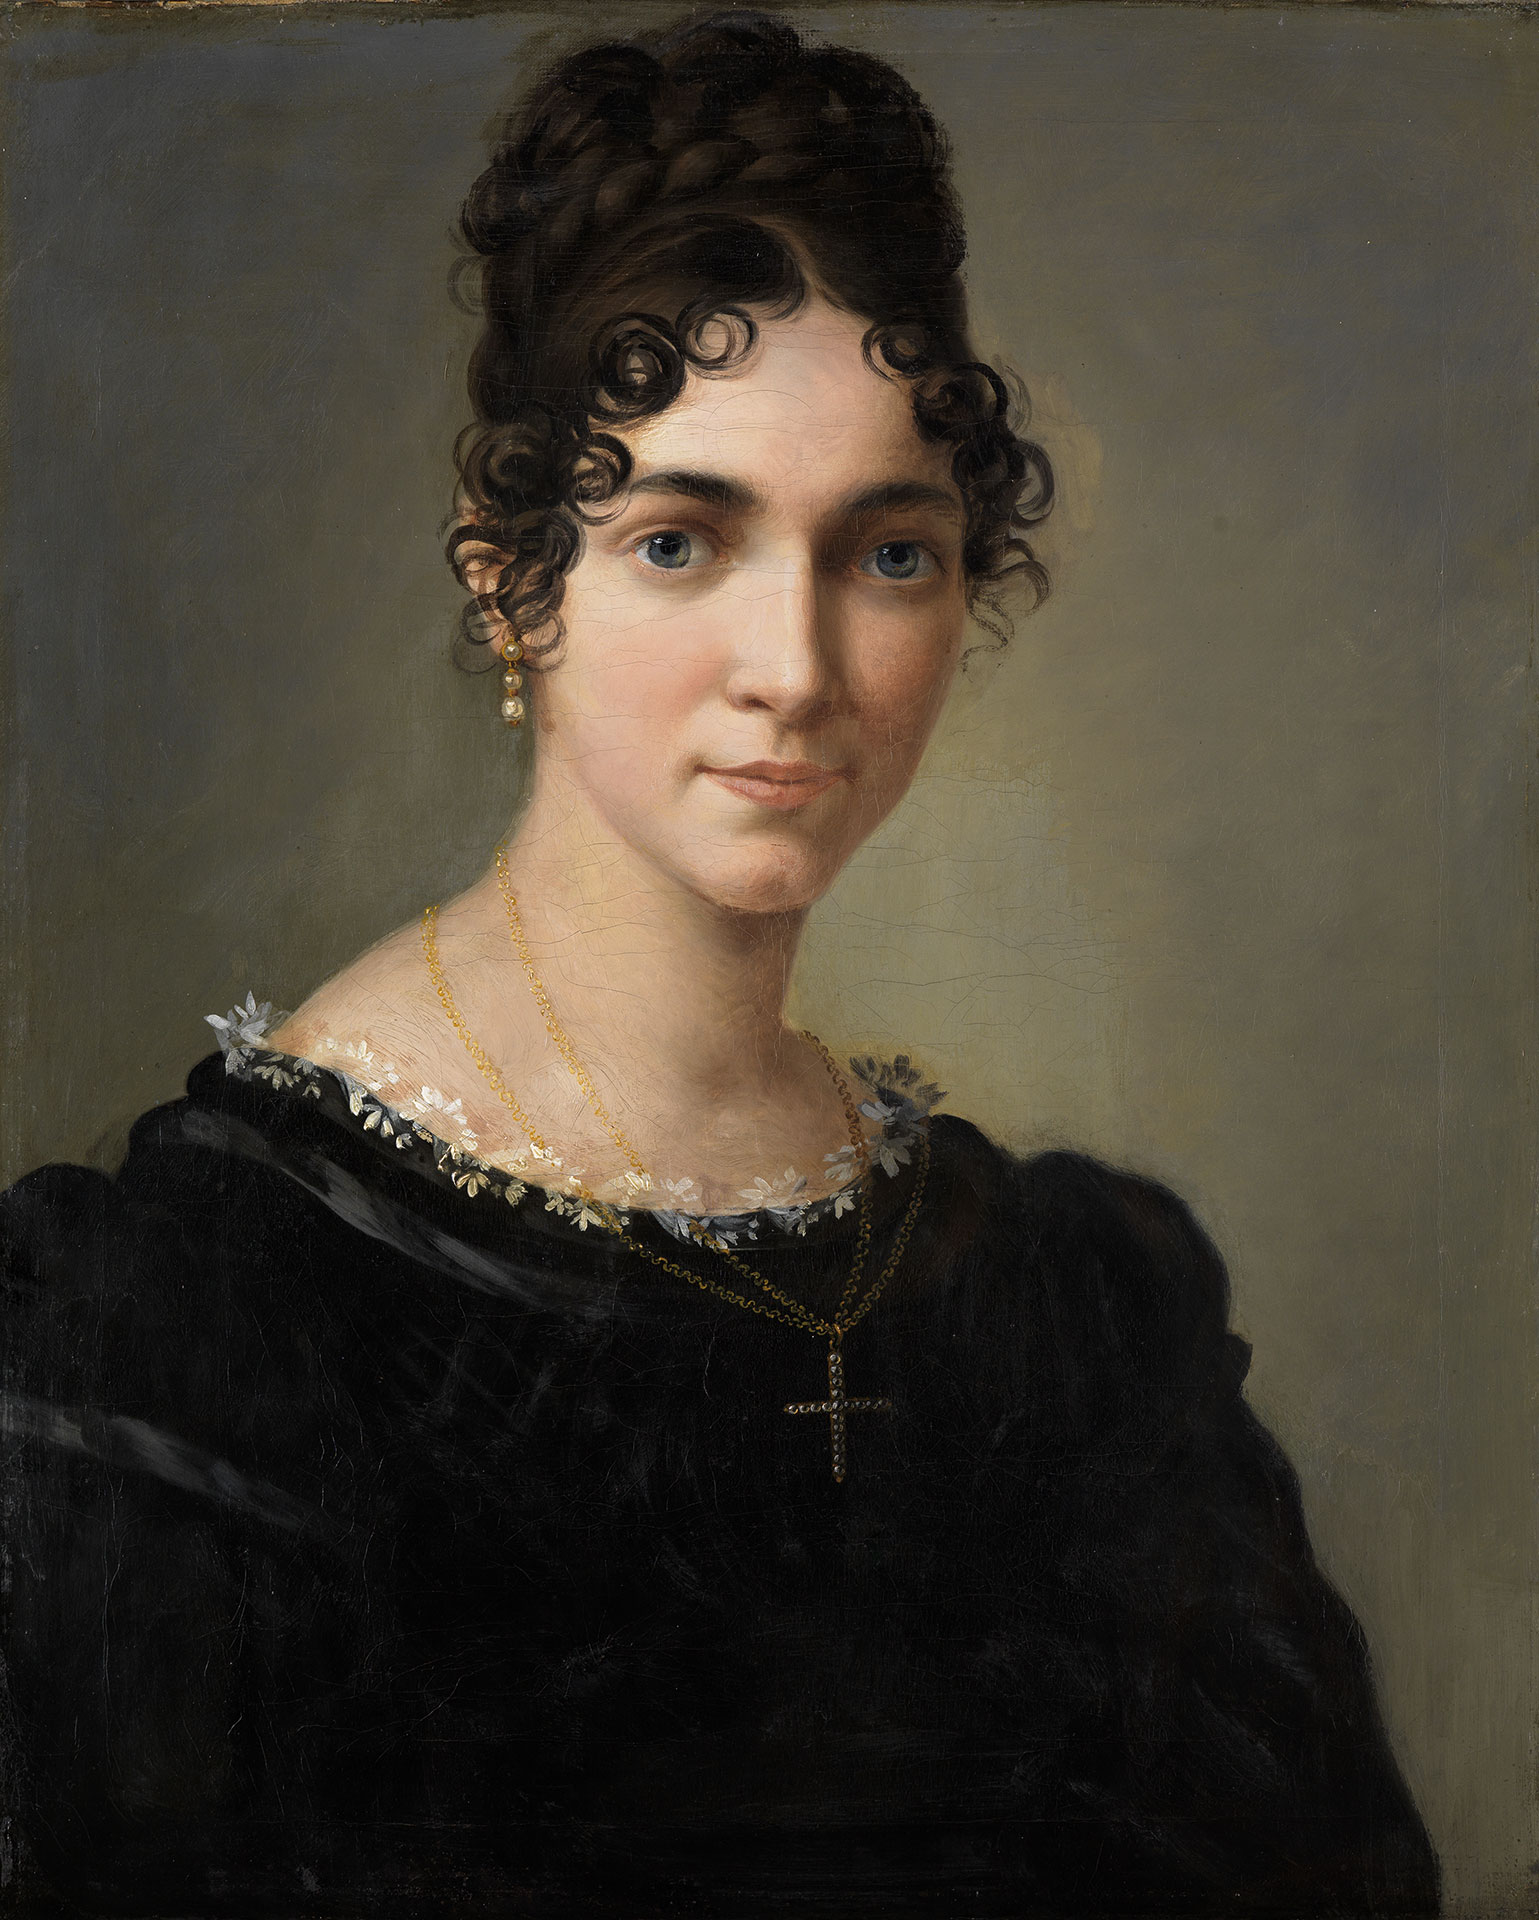 Gemälde Selbstbildnis von Marie Ellenrieder, entstanden 1818. Die Künstlerin trägt ein schwarzes Kleid und eine Kette mit einem Kreuz.